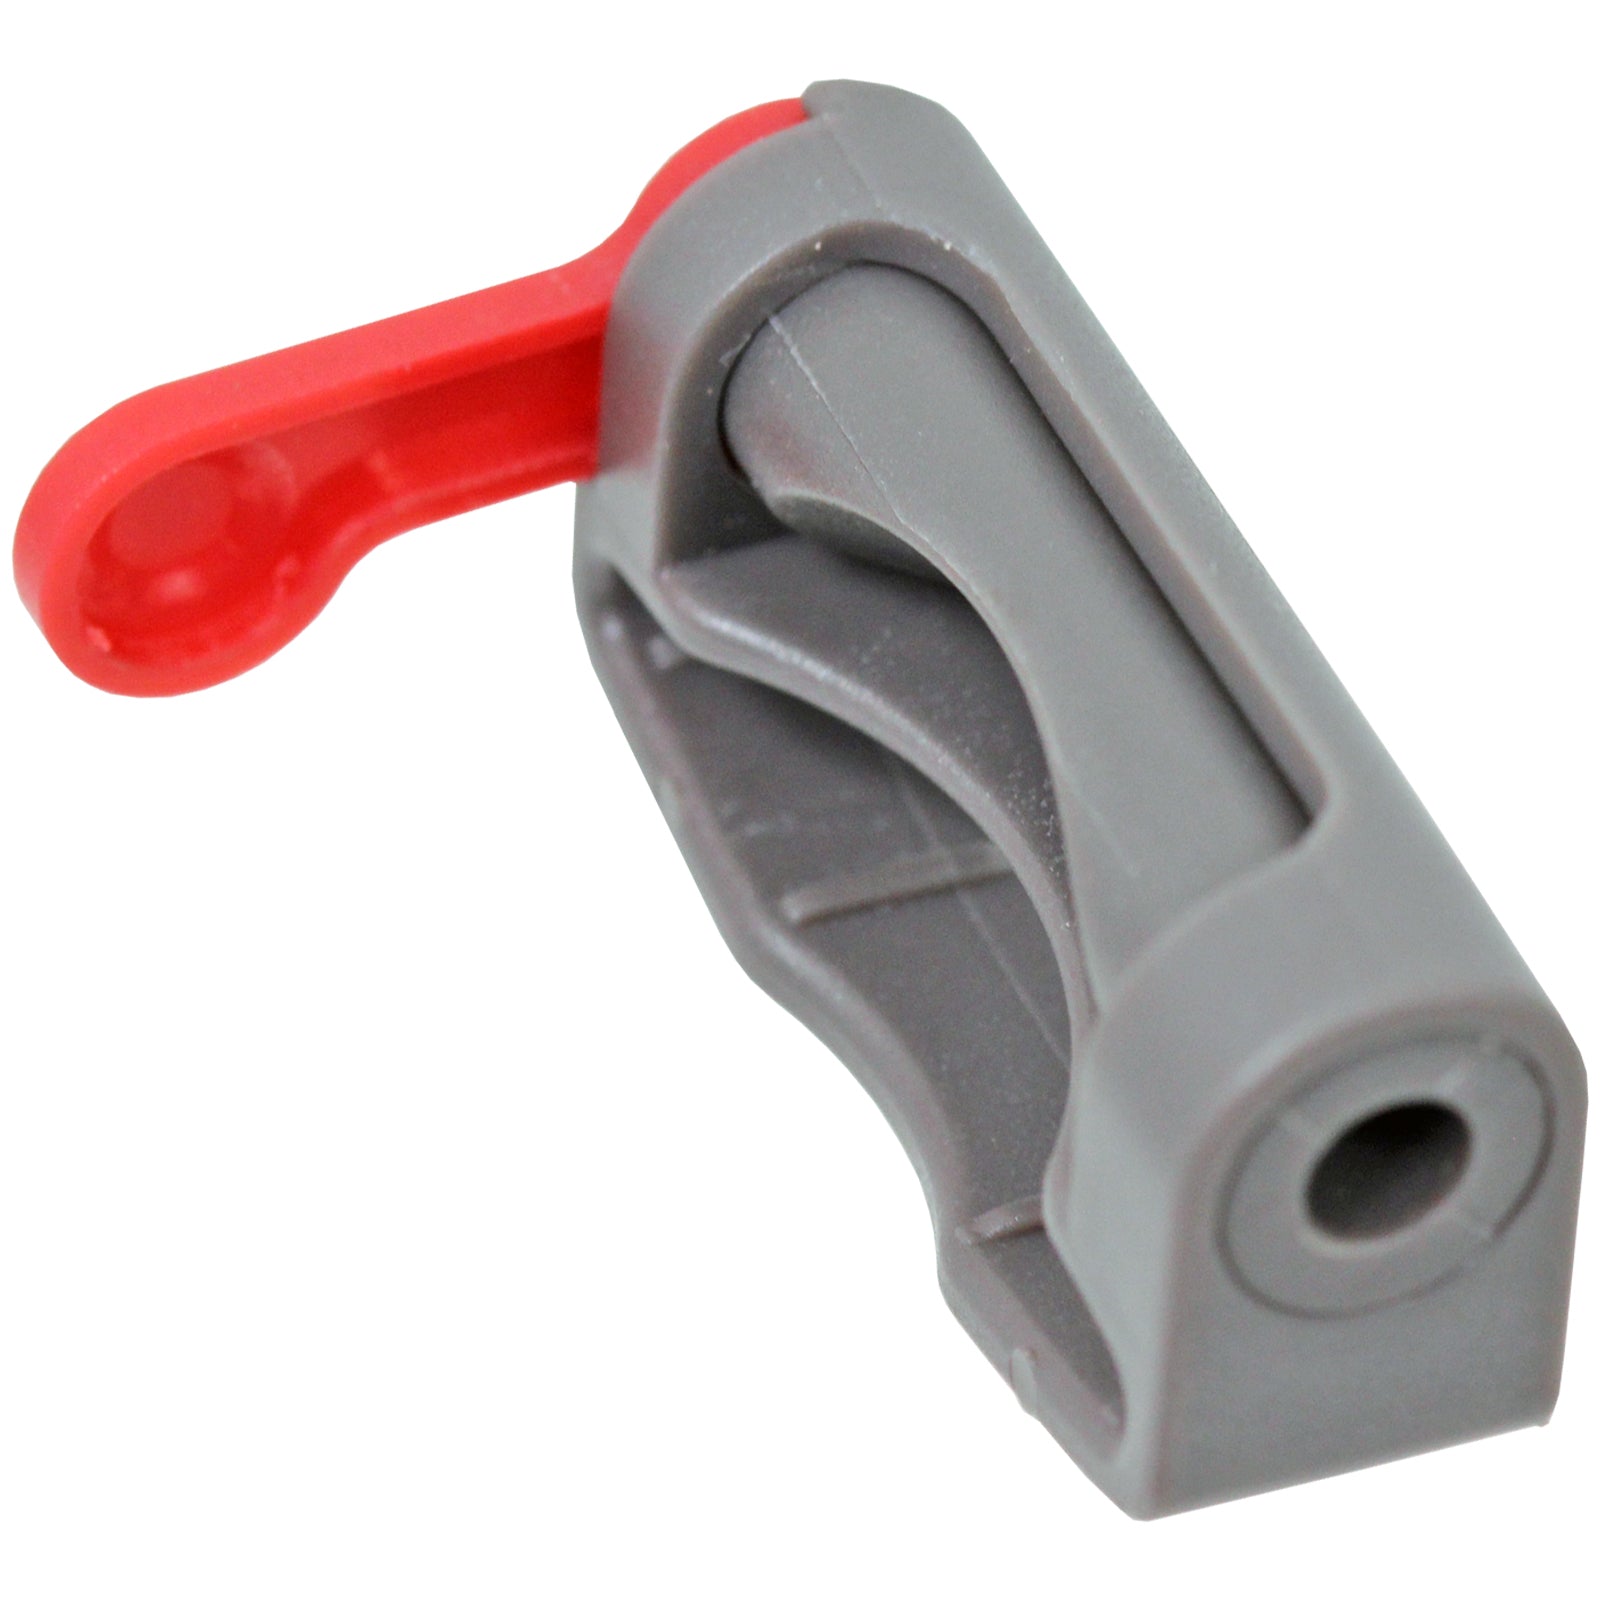 Washable Pre-Motor Stick Filter + Trigger Lock for Dyson SV03 SV04 SV07 SV09 SV10 SV11 Vacuum Cleaner (Pack of 2 Filters)